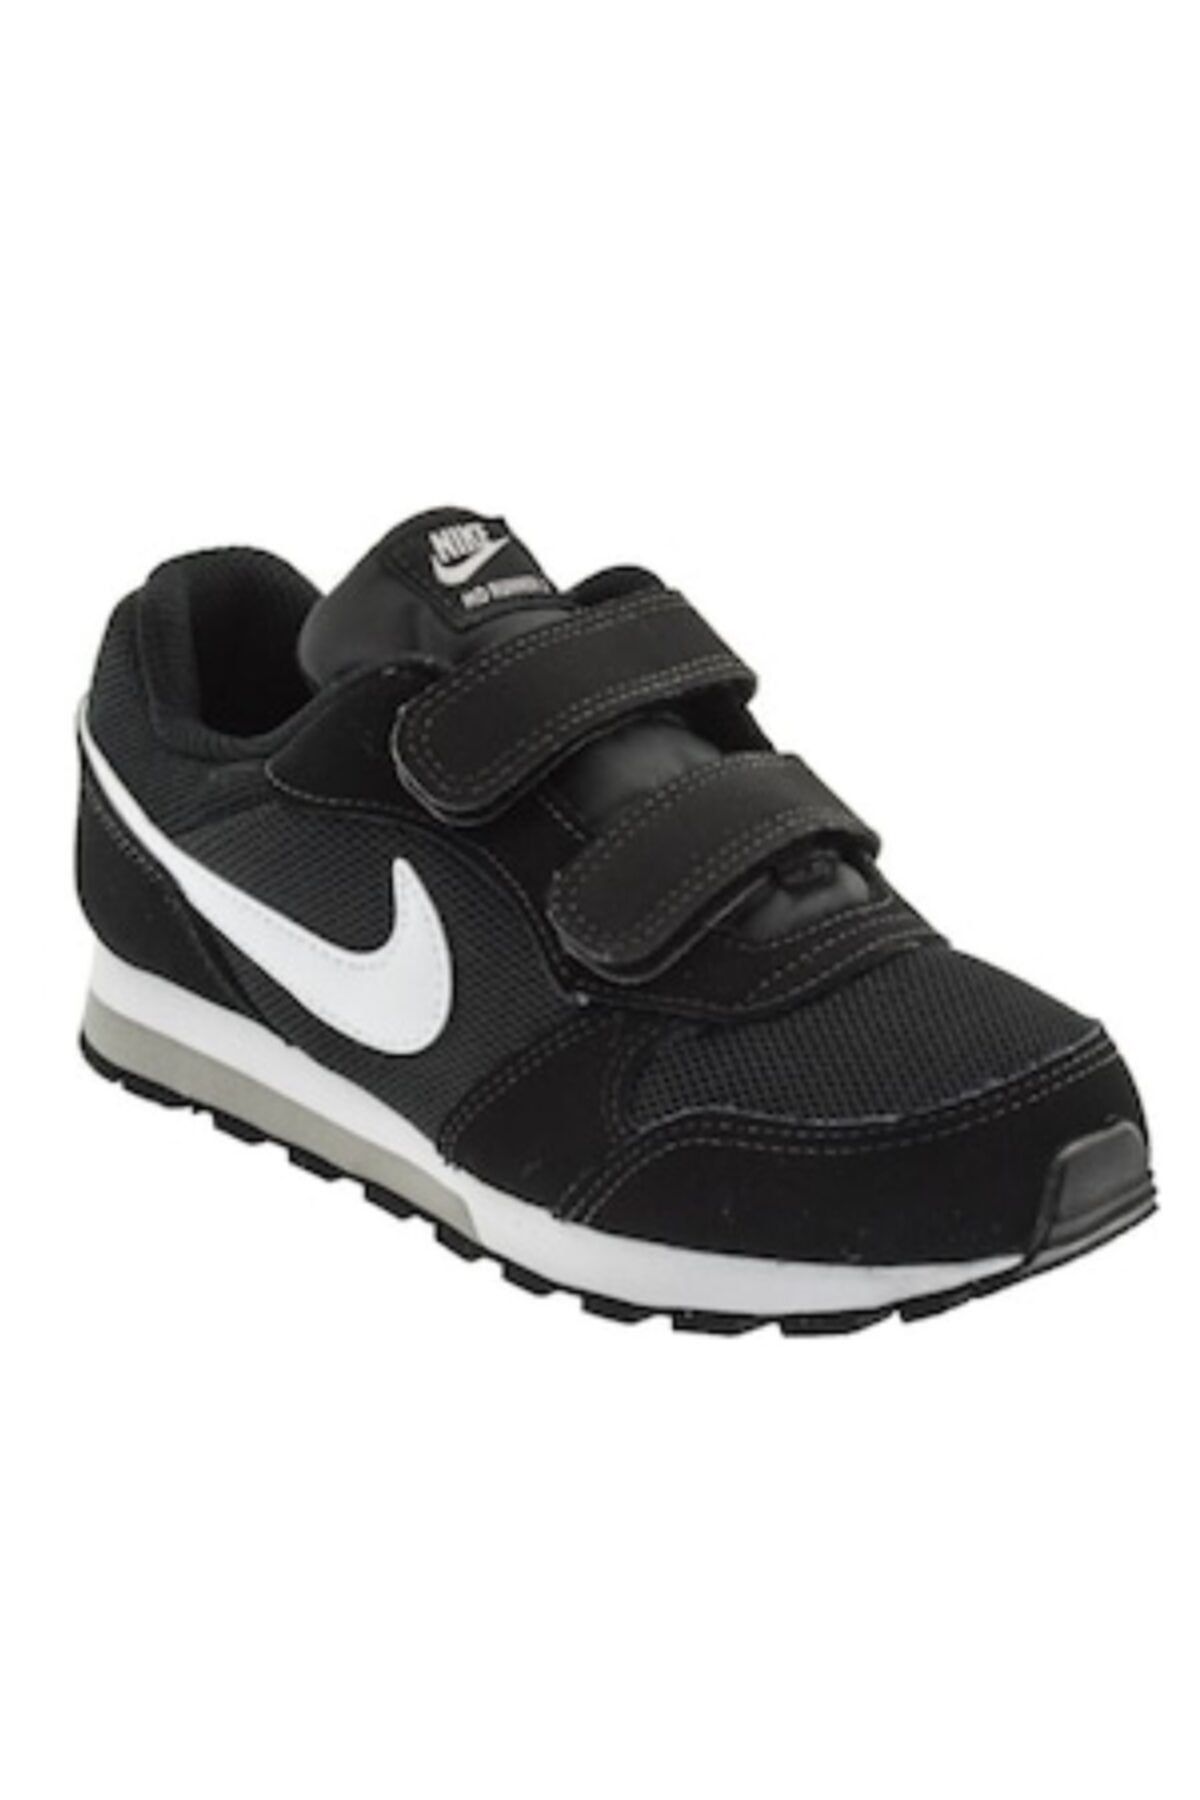 Nike 806255-001 Nike Md Runner 2 (Tdv) Bebek Günlük Ayakkabı Siyah